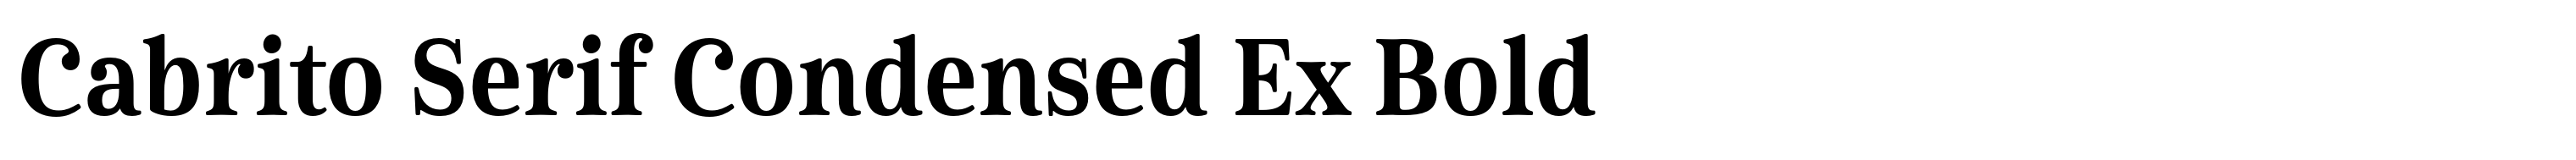 Cabrito Serif Condensed Ex Bold